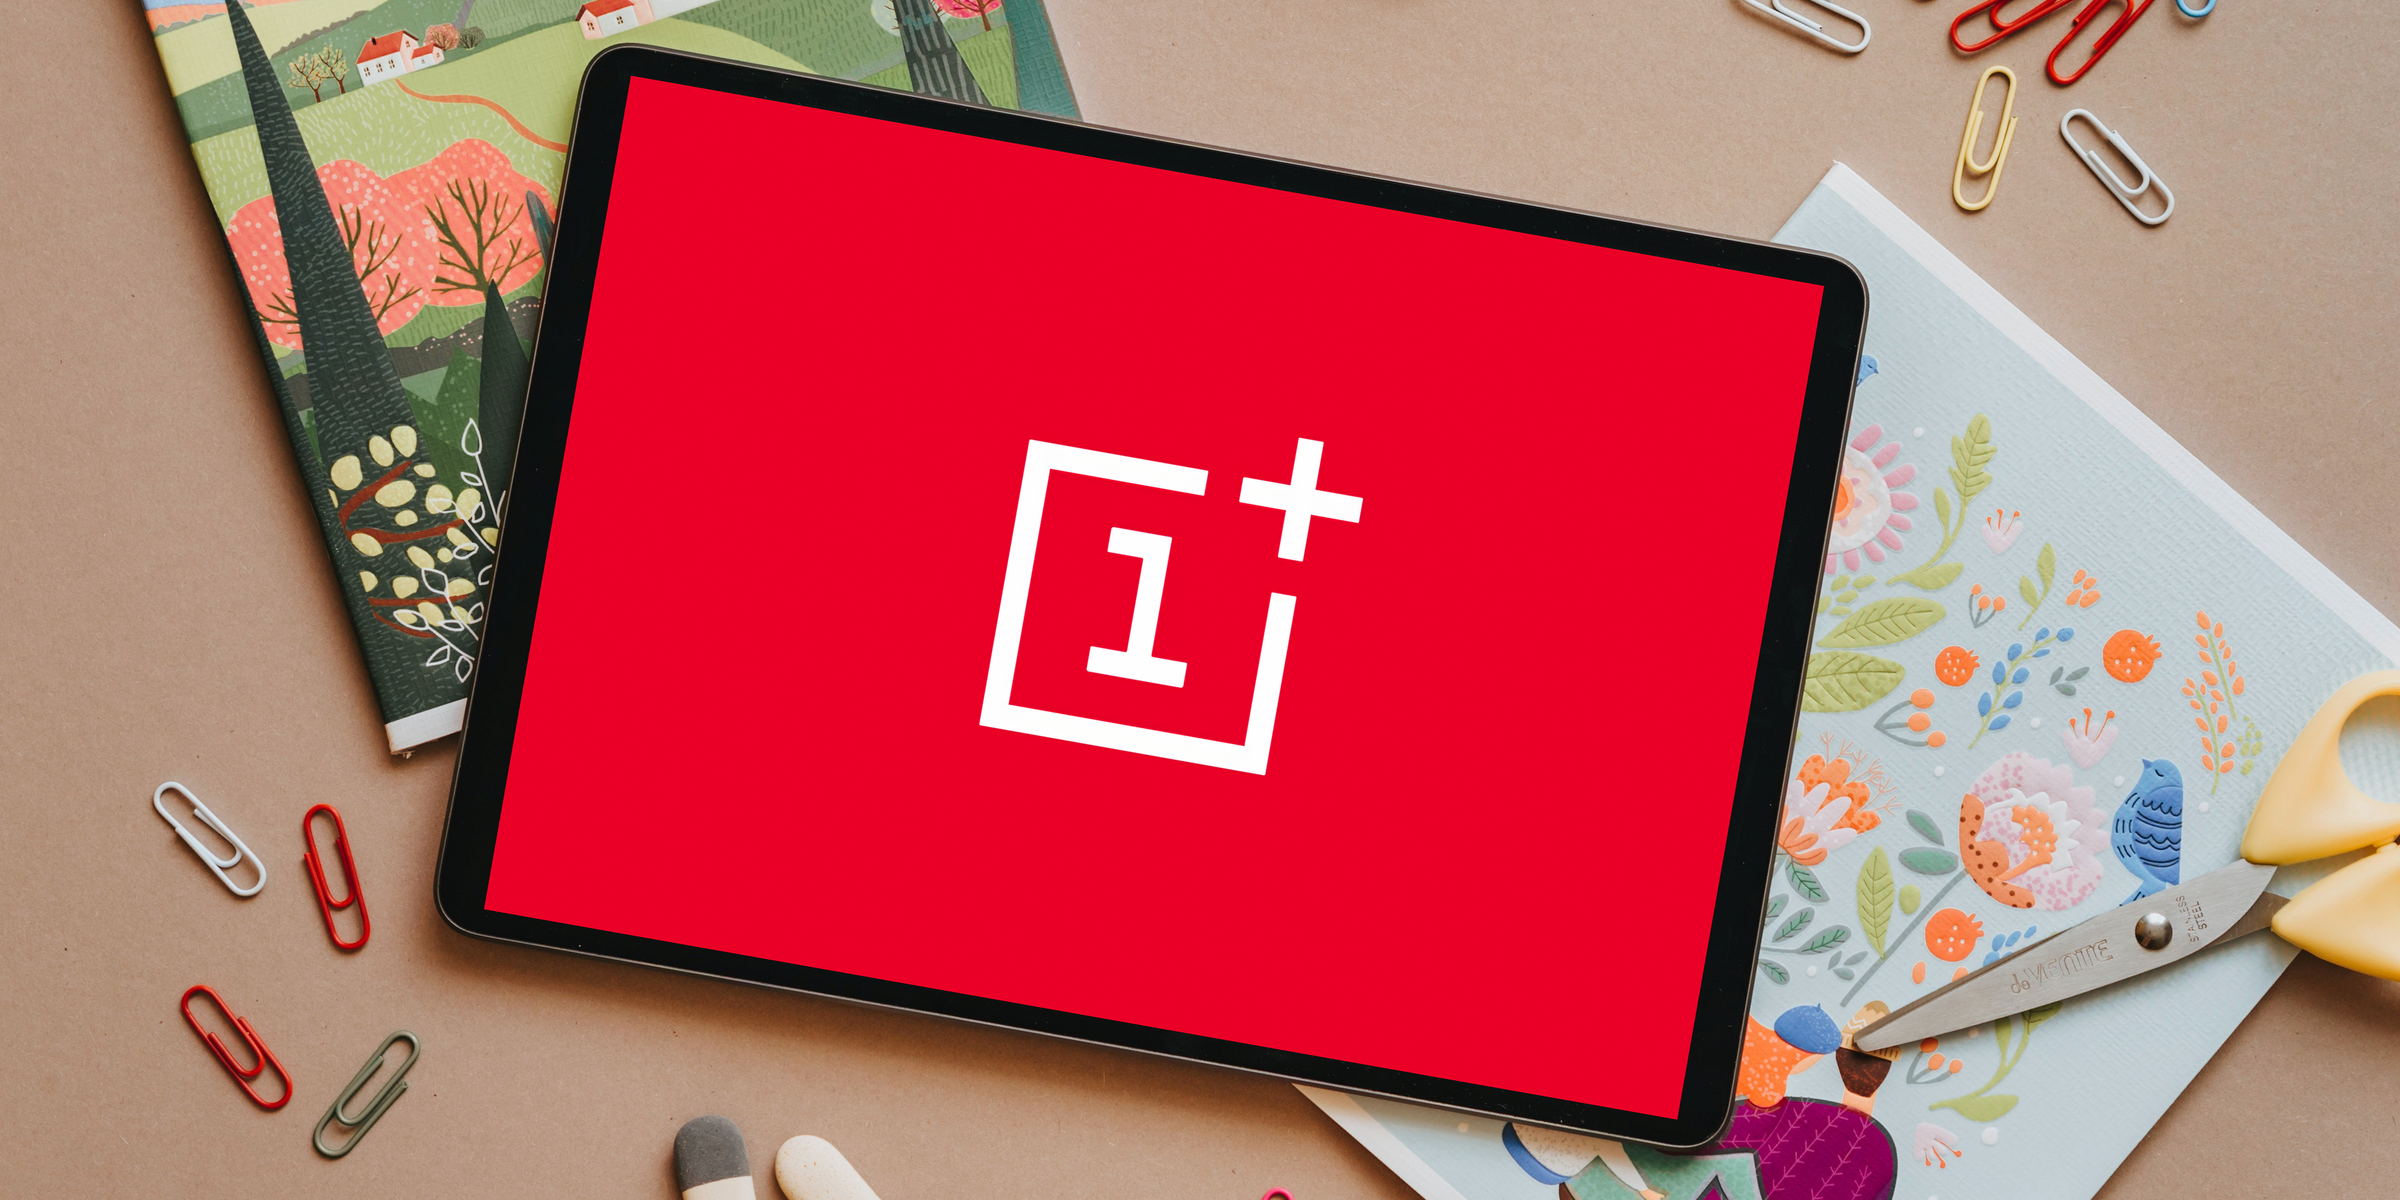 OnePlus travaille sur sa première tablette, elle sera présentée en 2022